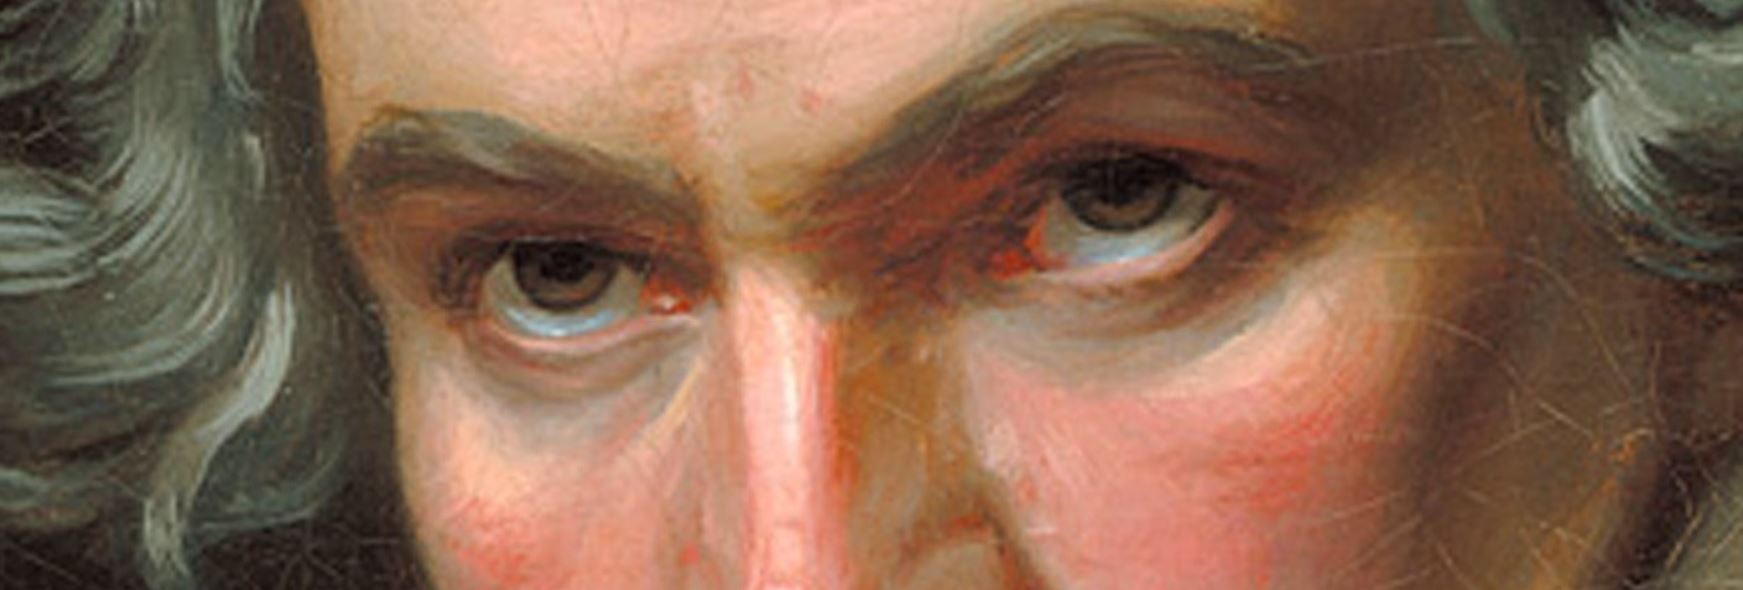 Beethovens Augen